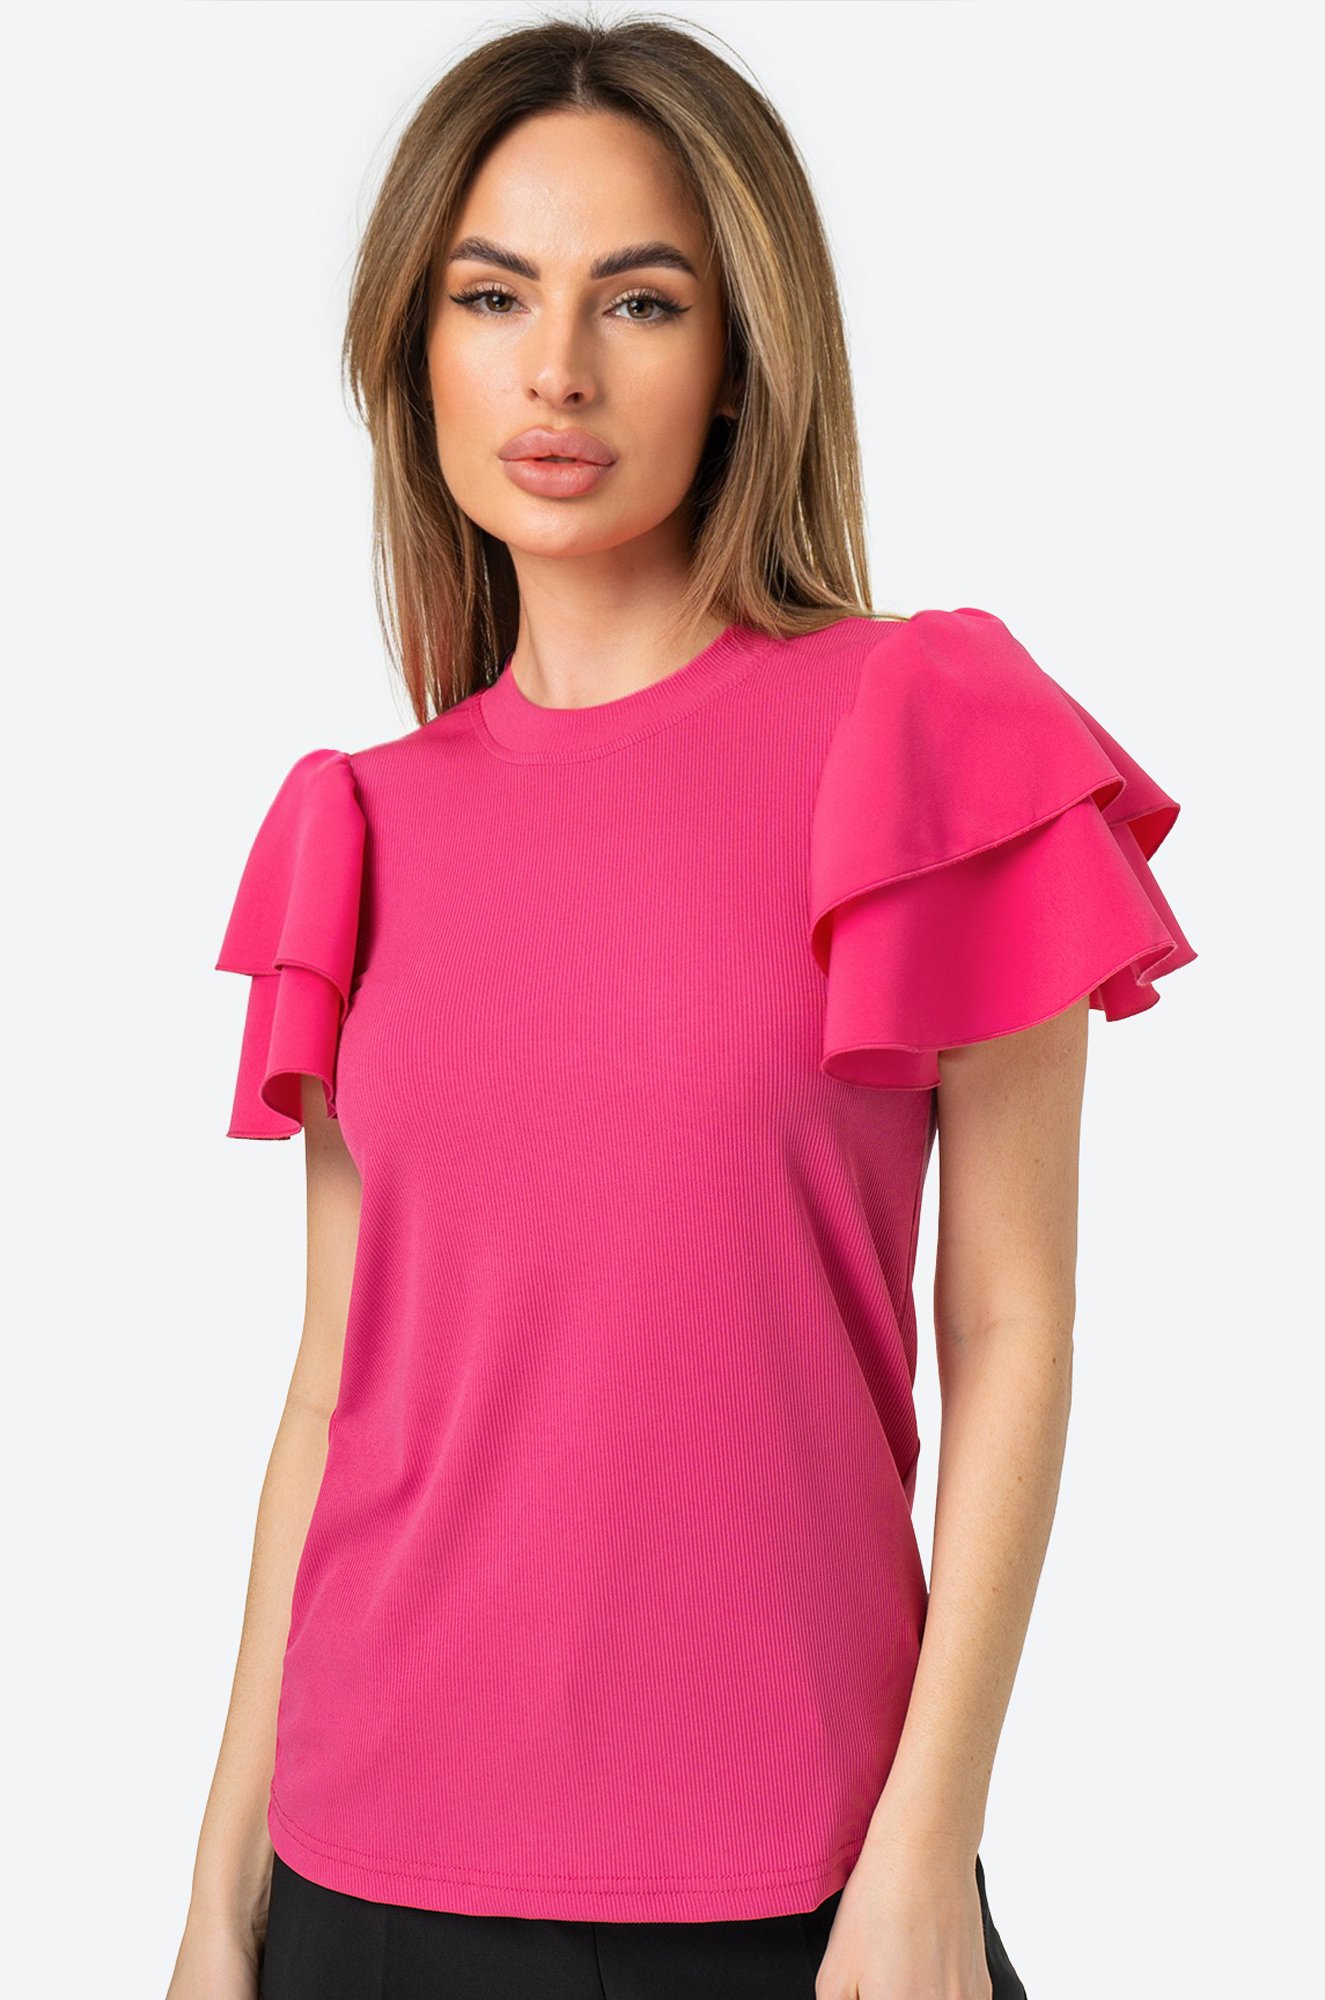 Женская нарядная блузка с коротким рукавом Happy Fox